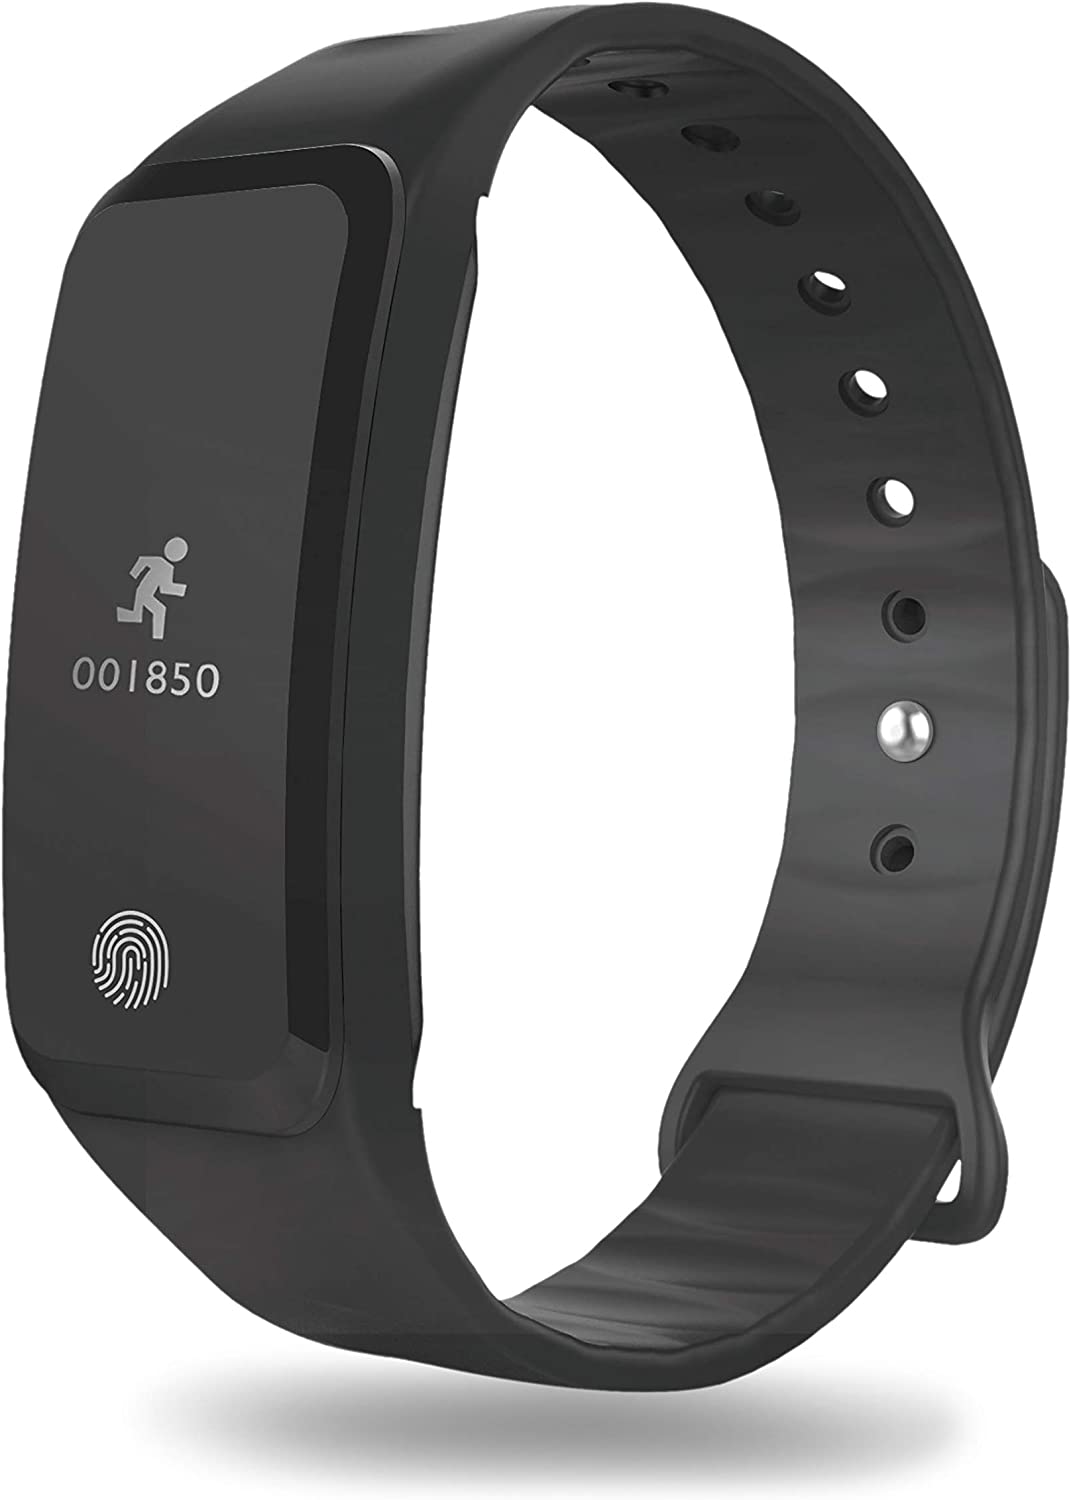 GHIA  Smartband con Pantalla De 0.49" (Bluetooth 4.0, iOS/Android), Color Negro